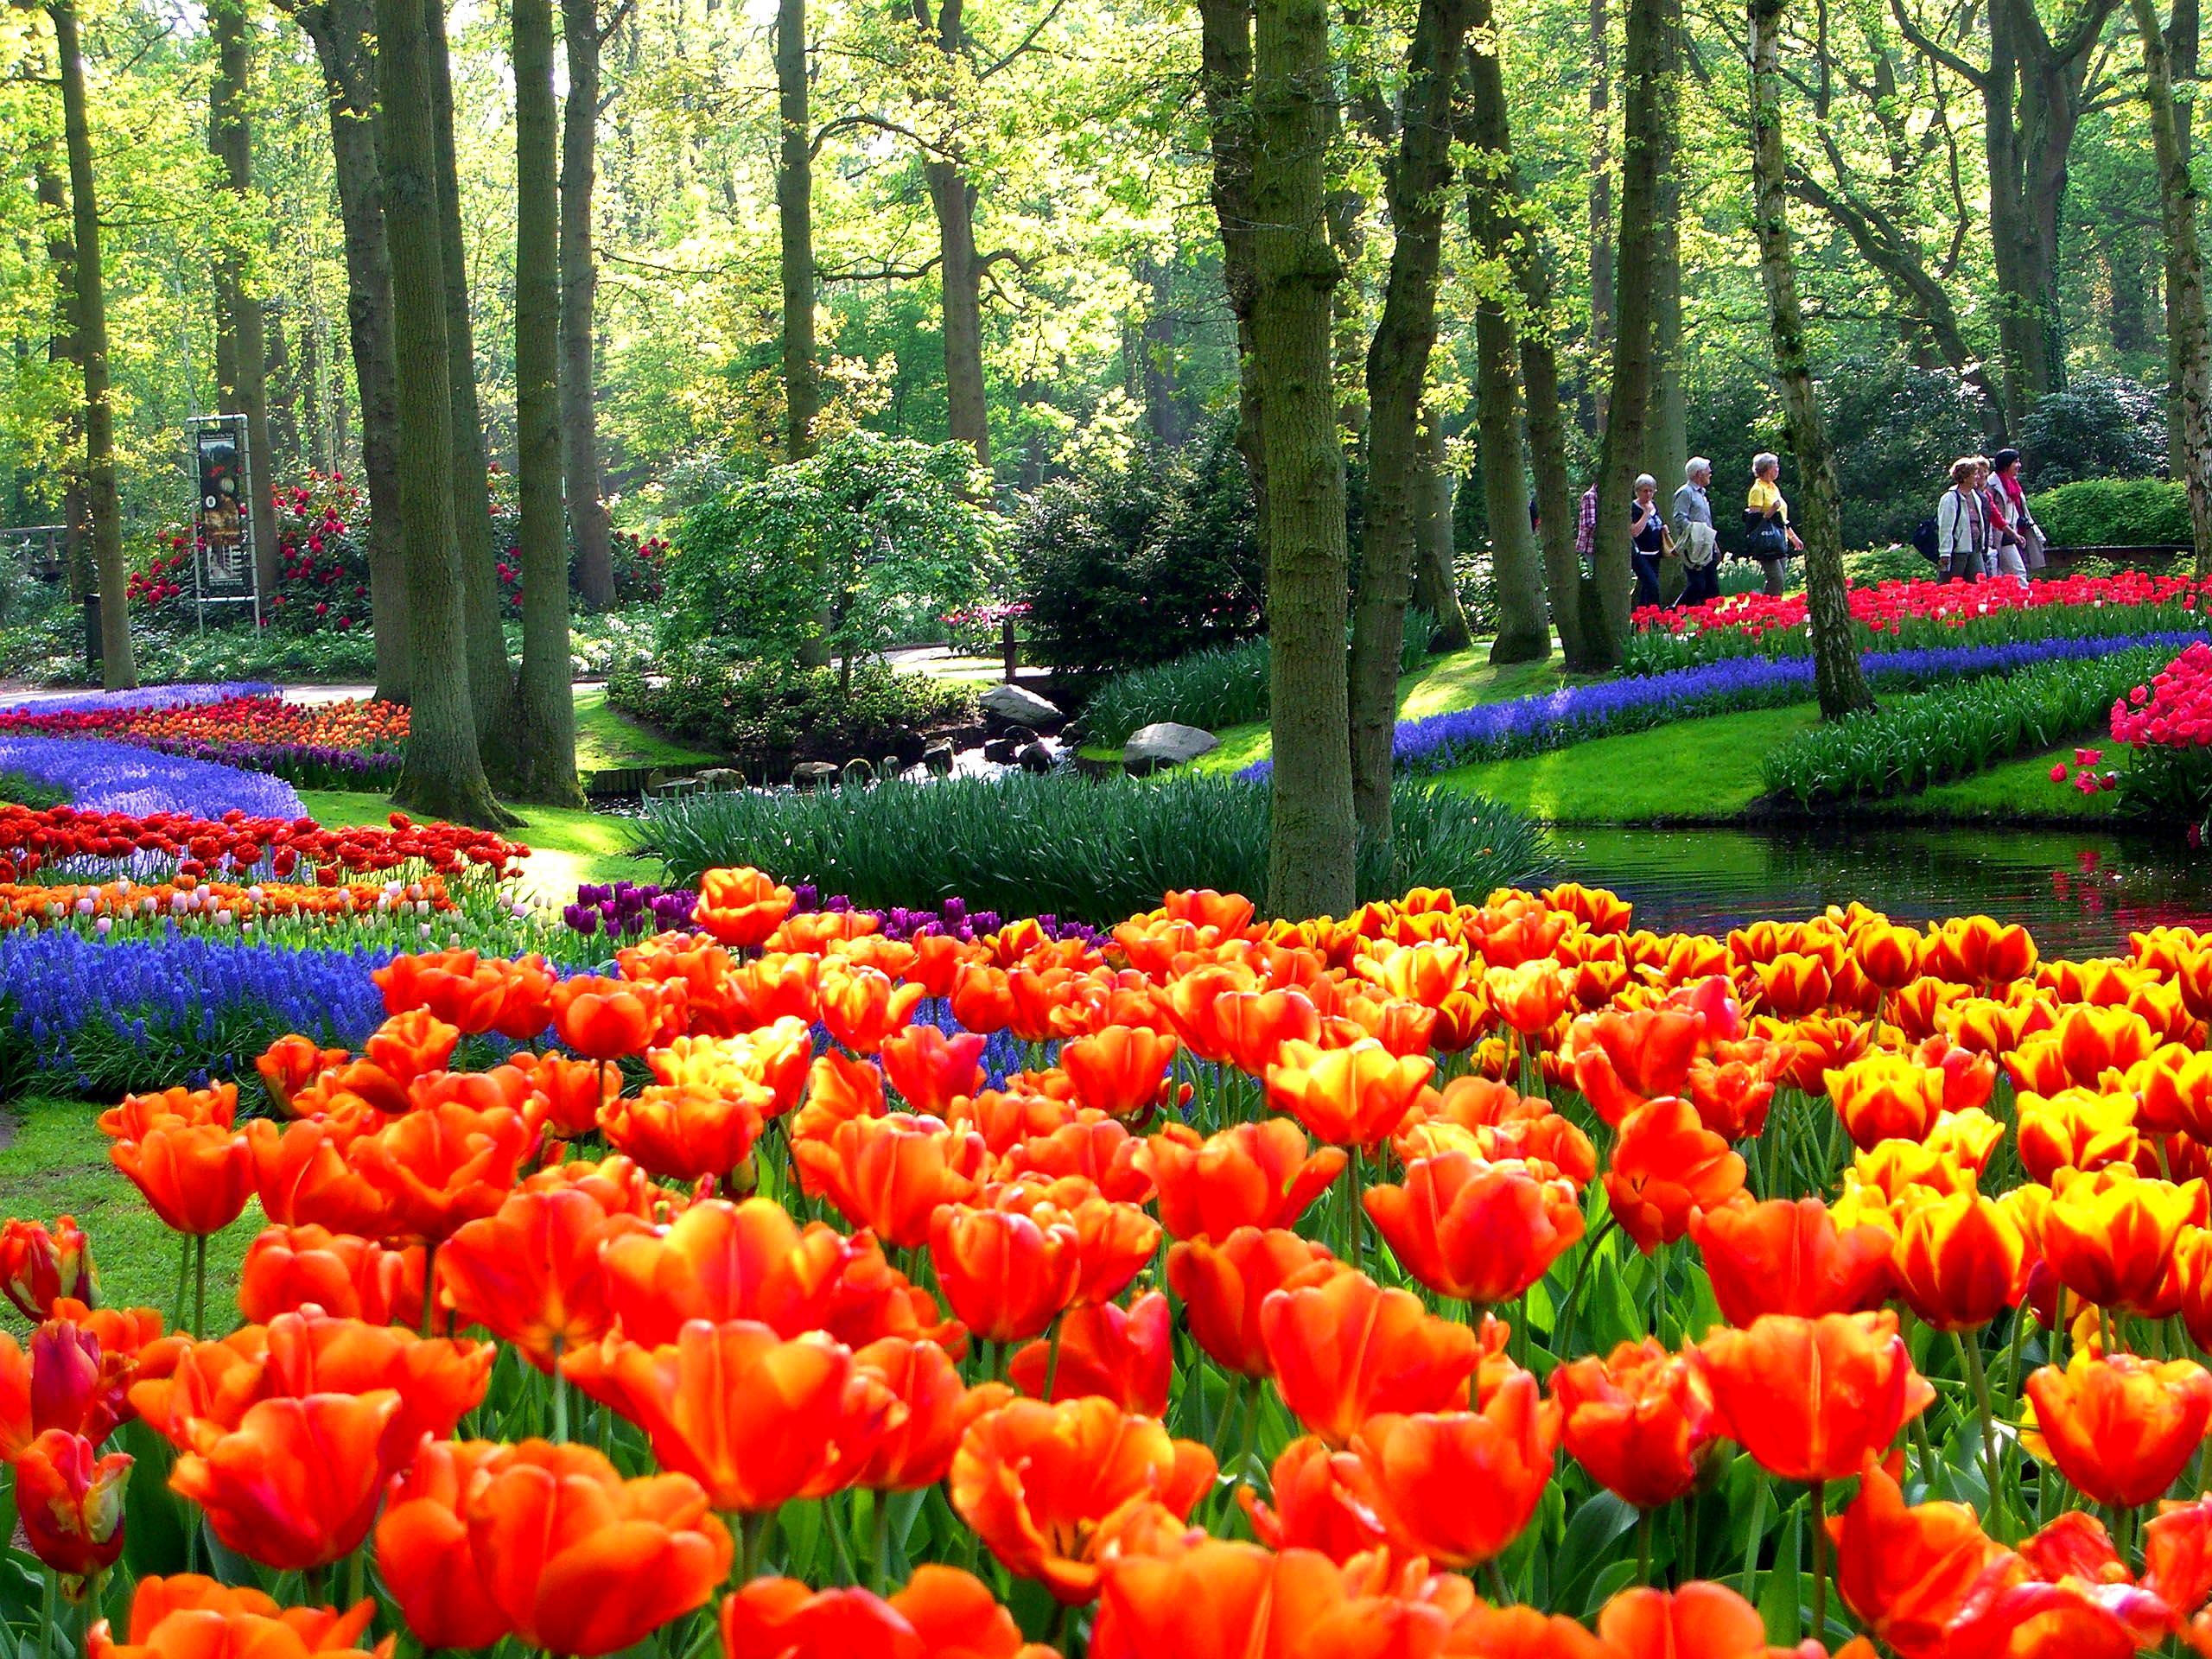 世界上十个最漂亮的公园,亚洲仅一个花园上榜,其中三个属于法国